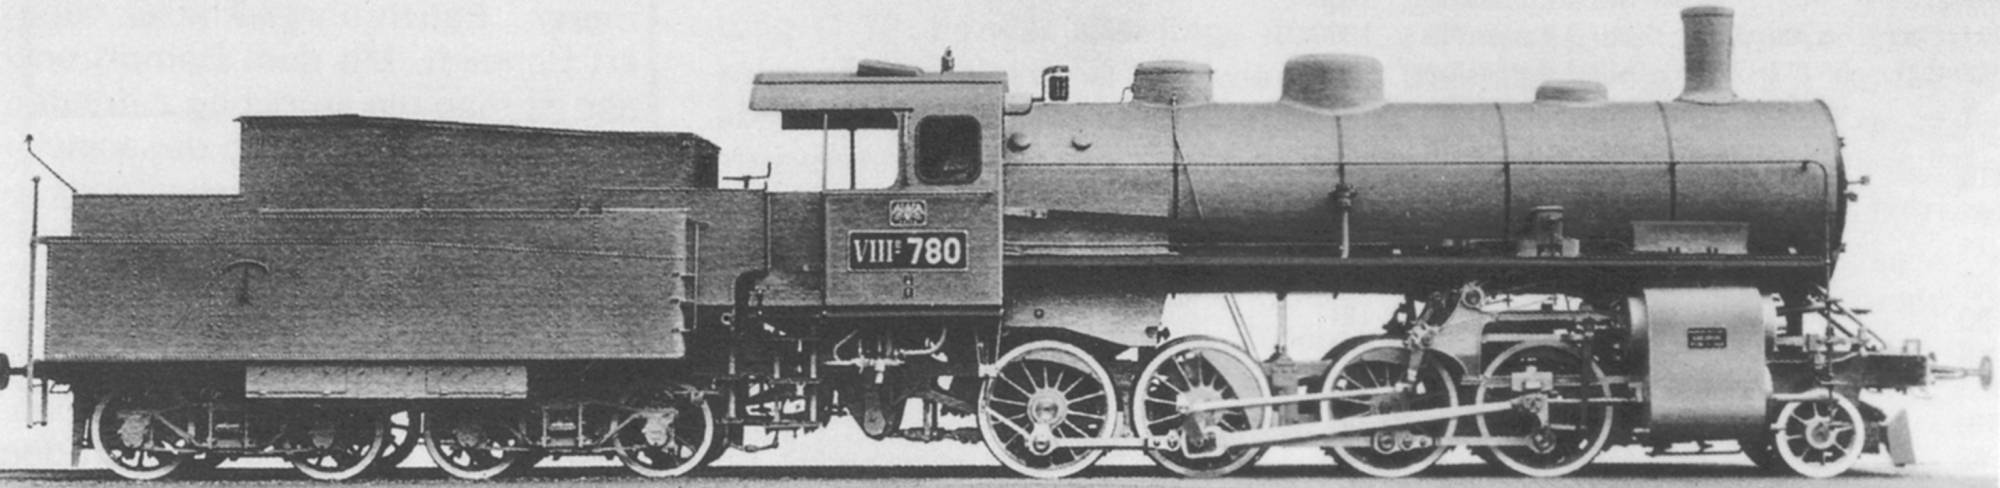 No. 780, first batch, around 1908